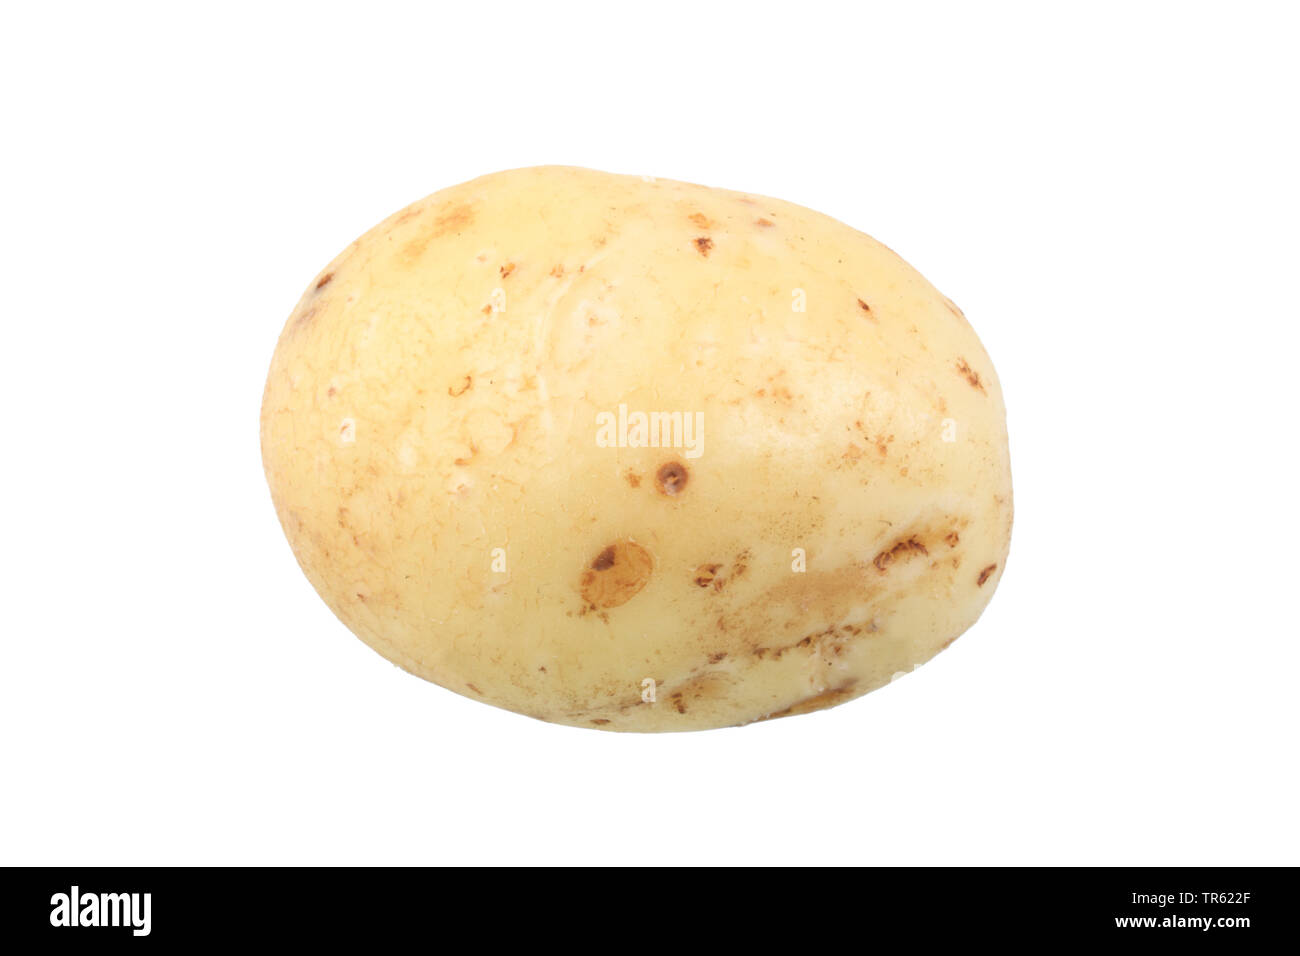 potato (Solanum tuberosum Prinzen), potato of cultivar Prinzen, cutout Stock Photo